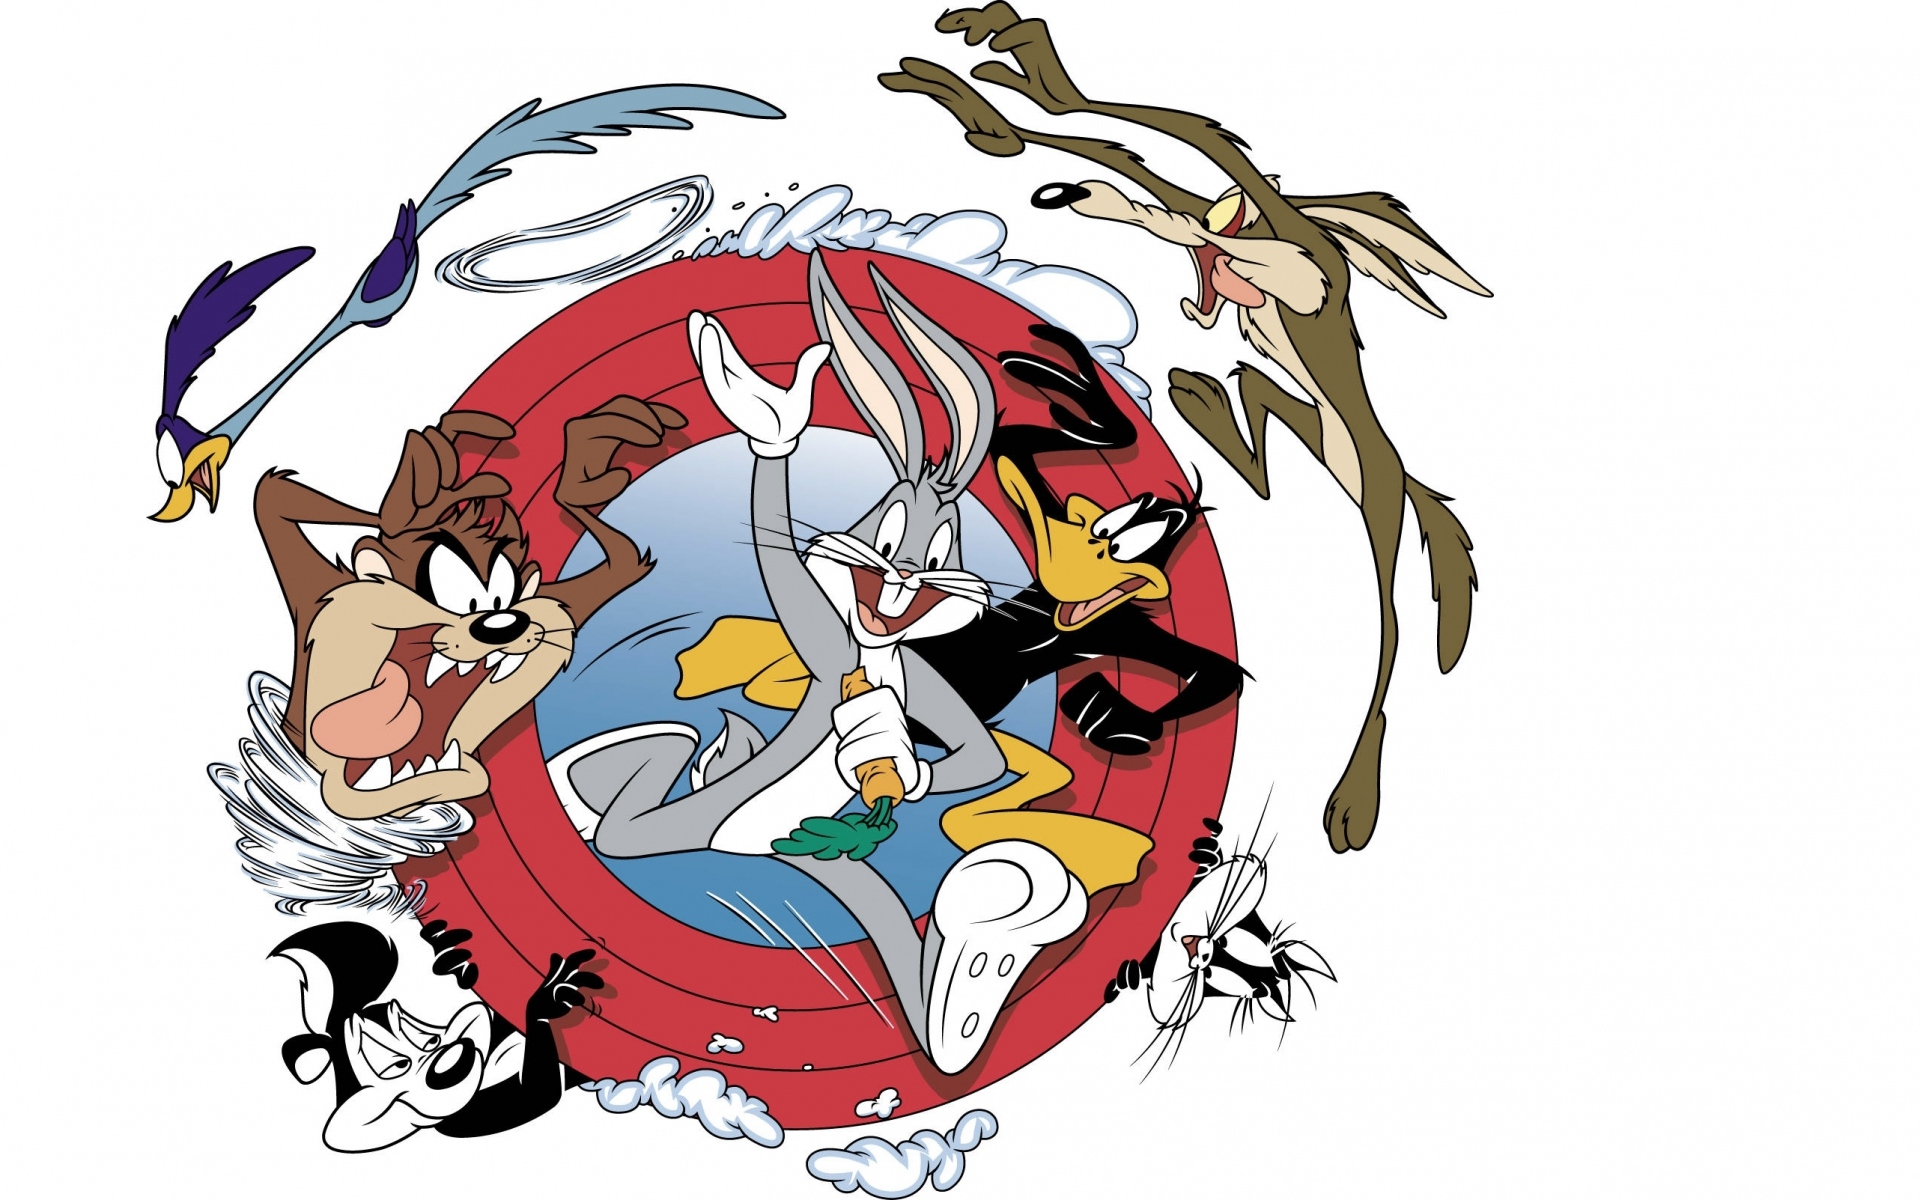 Картинки Looney Tunes, ошибки Банни, Даффи Дак, Сильвестр, Tweety, Тасманский дьявол, дорожный бегун фото и обои на рабочий стол